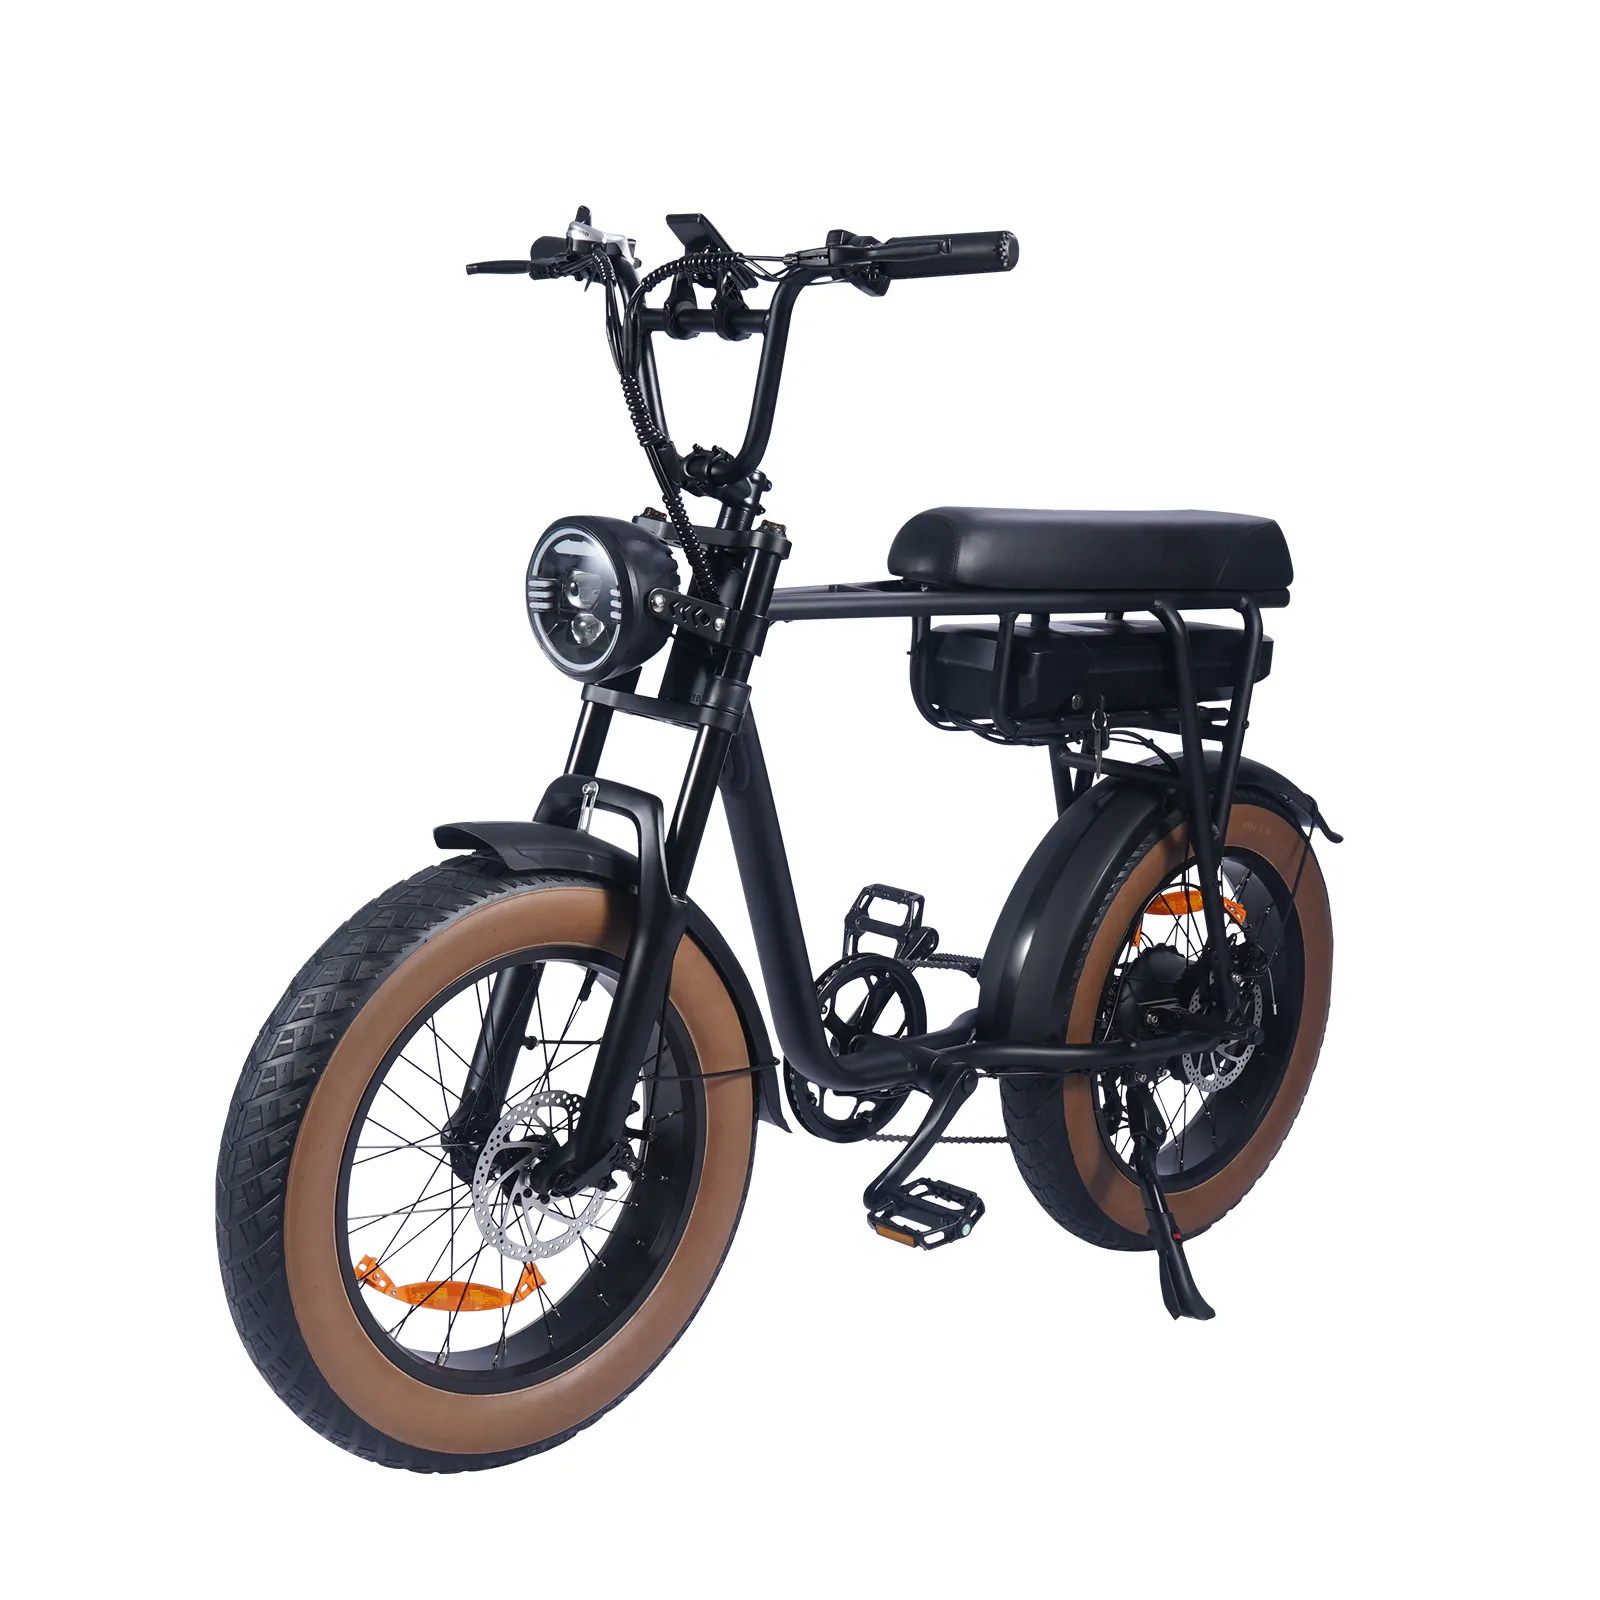 Magazzino ue Retro Vintage Style bicicletta elettrica freno a disco motore mozzo posteriore 20*4.0 Fat tire bici elettrica E-Bike